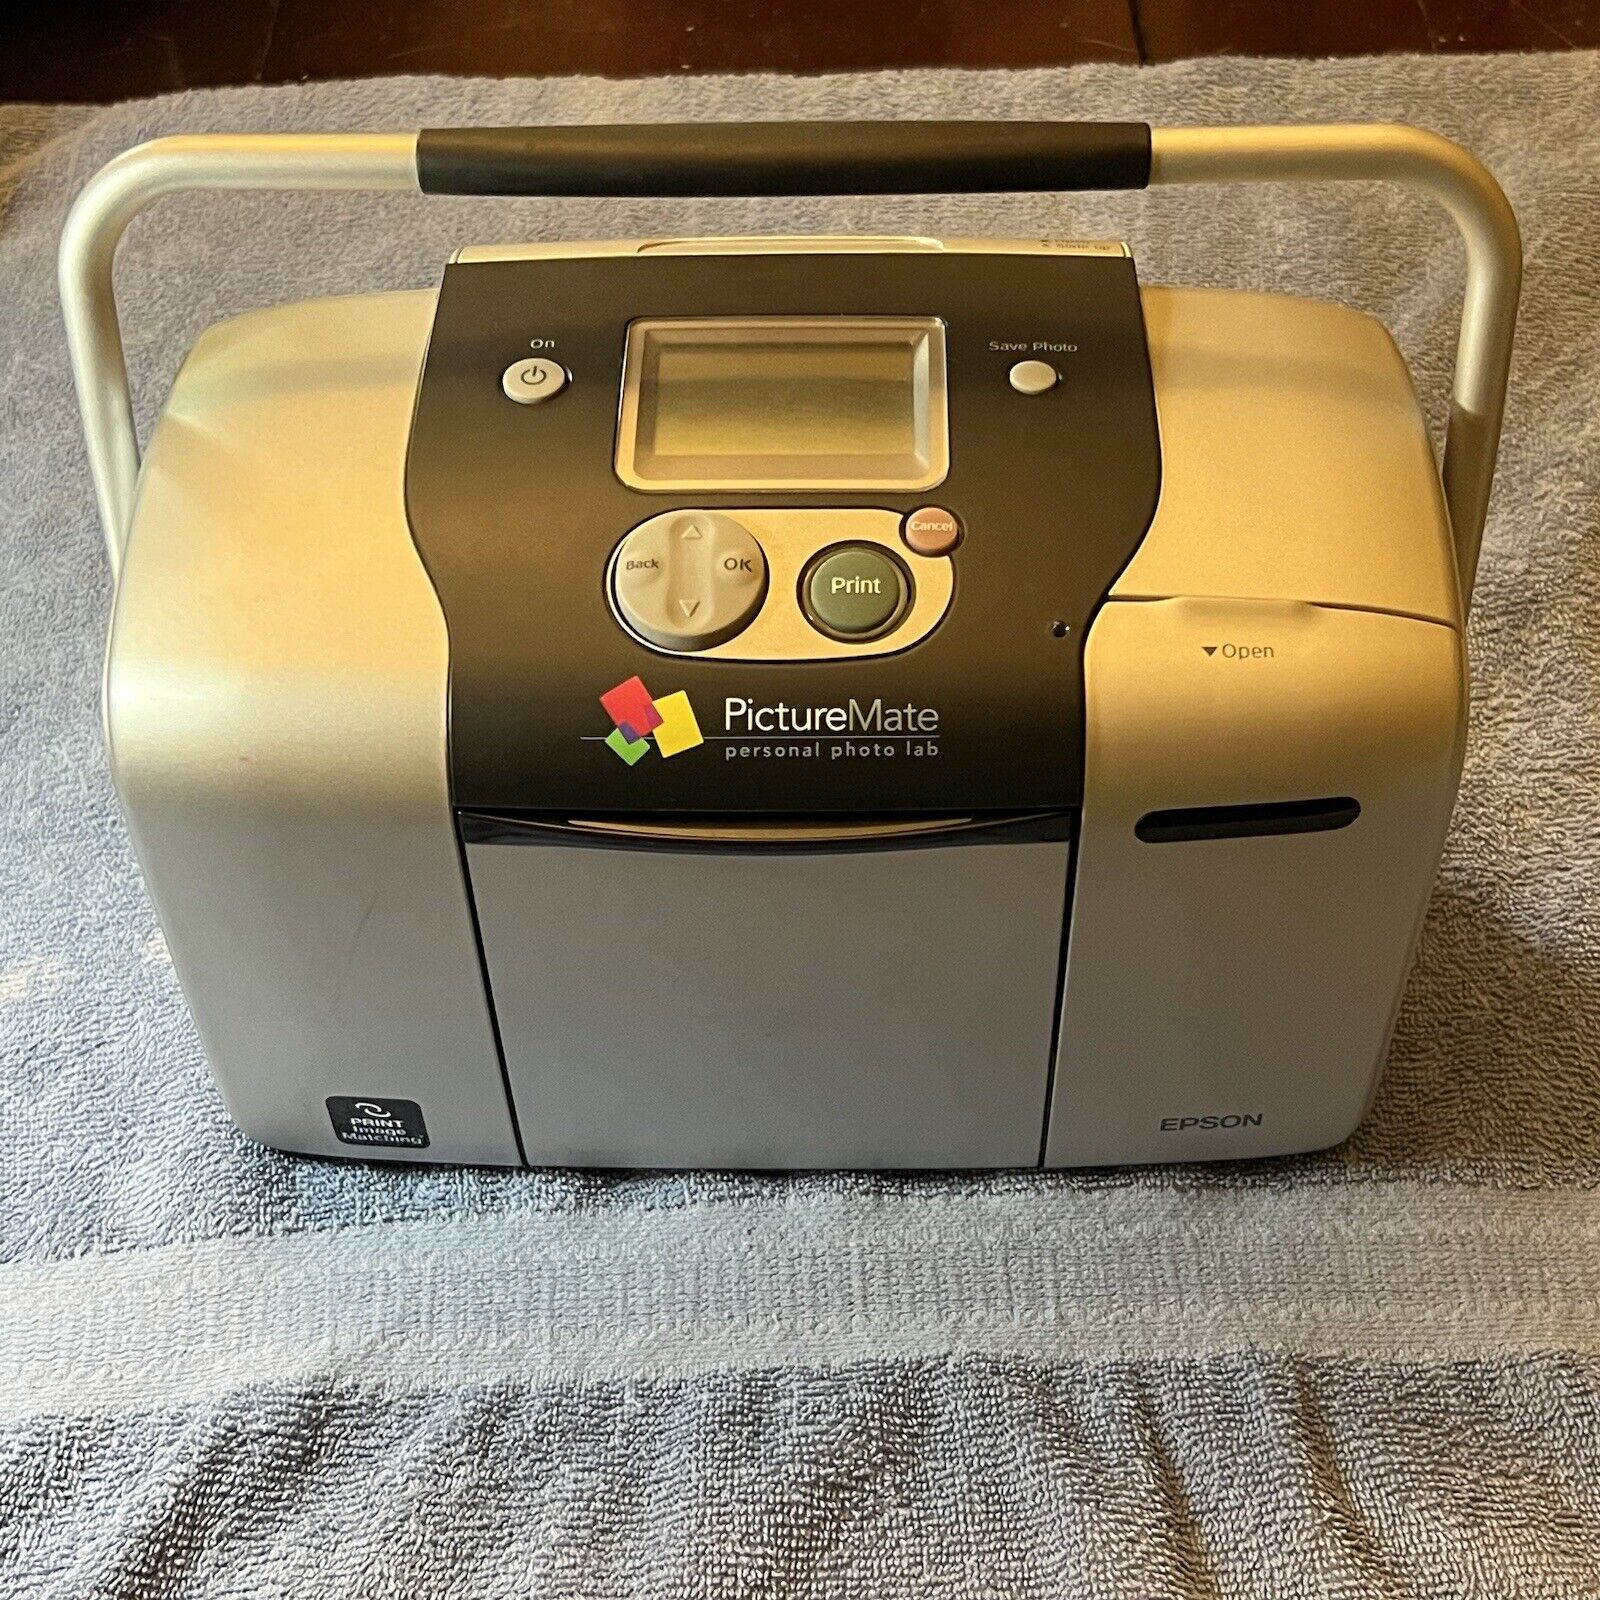 Epson Picturemate Deluxe 500 Personal Photo Printer Model No B271A (No Pwr Cord)